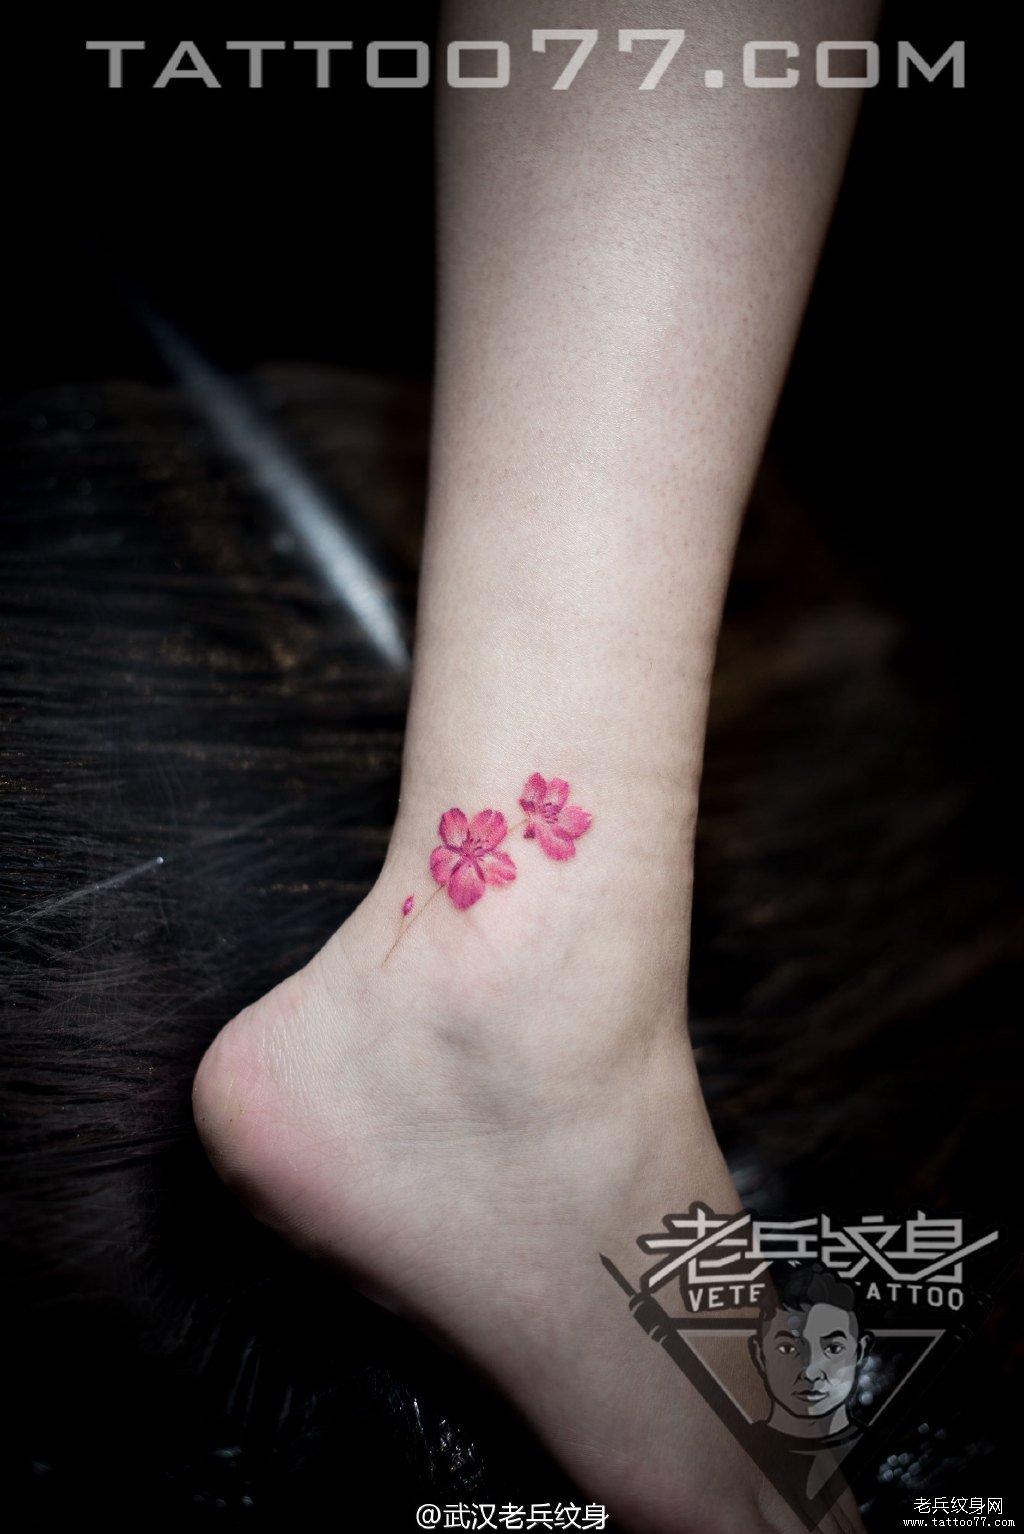 脚踝小花卉纹身图案作品